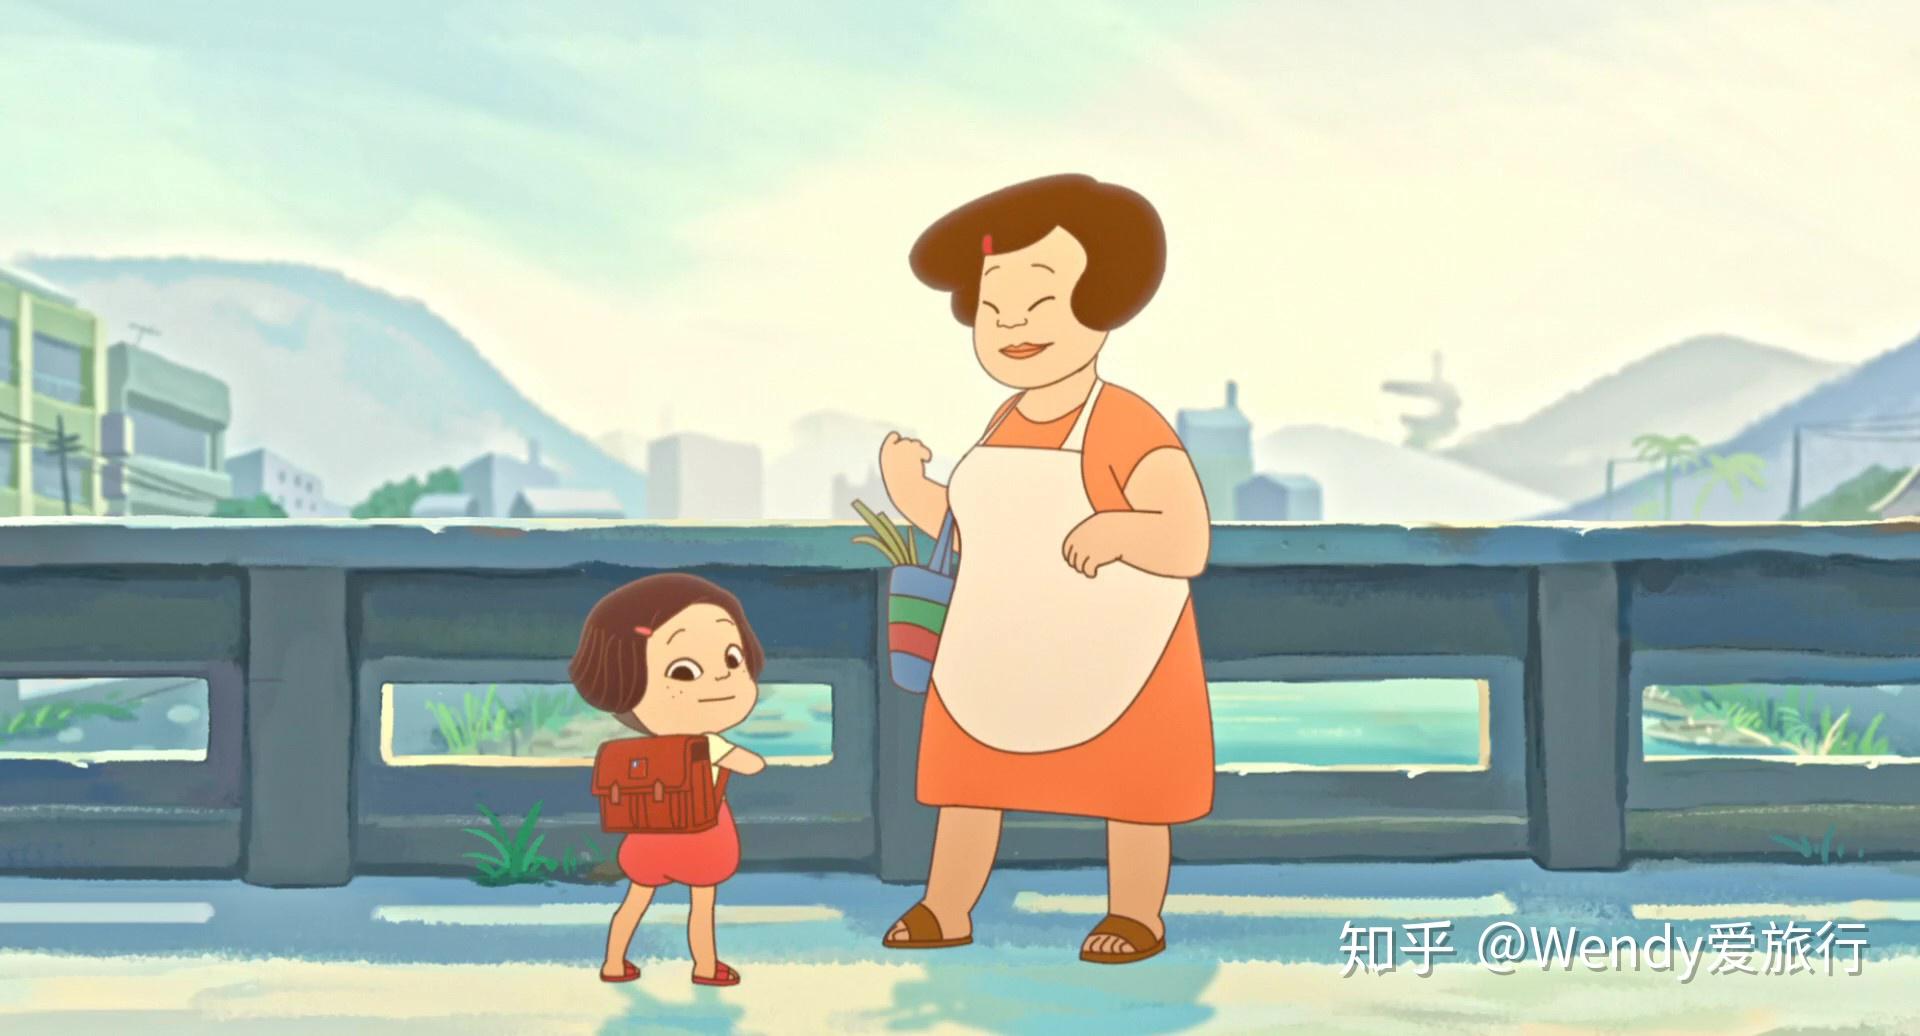 如何评价台湾电影\/动画片《幸福路上》?